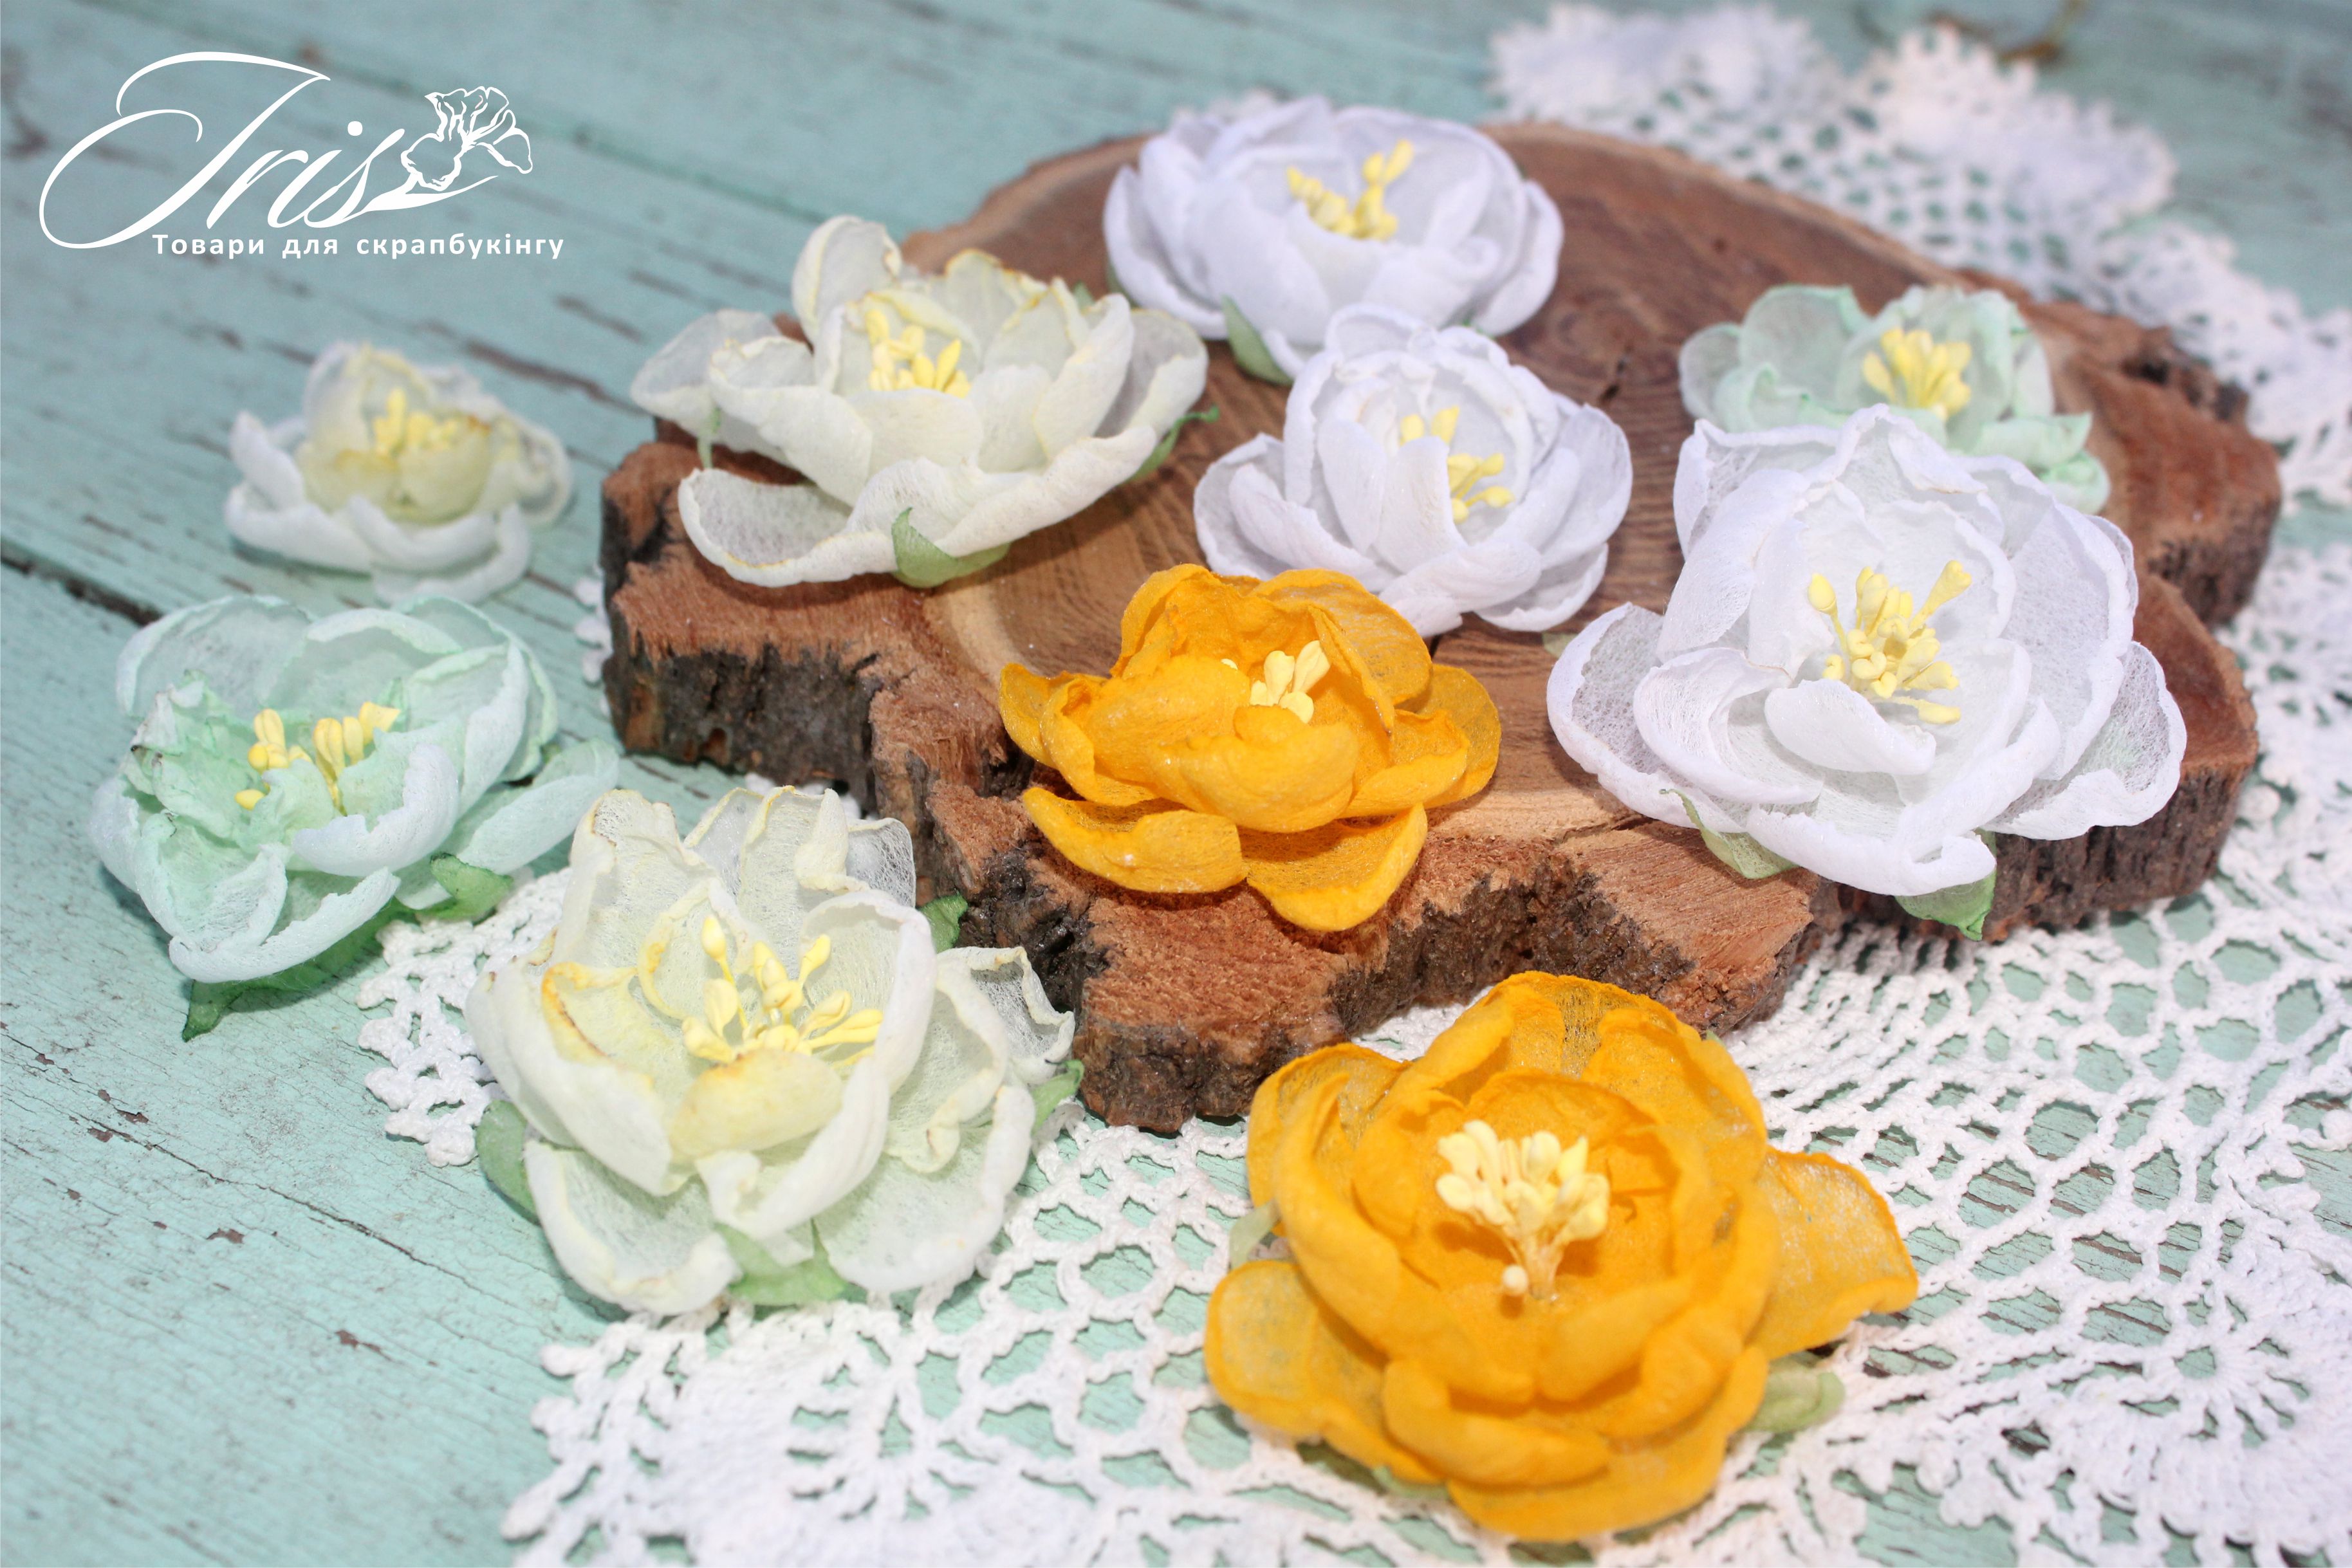 Набор цветов и декора, Royalty flowers Желто-зеленый микс, 40-50 мм, 10 шт, Iris